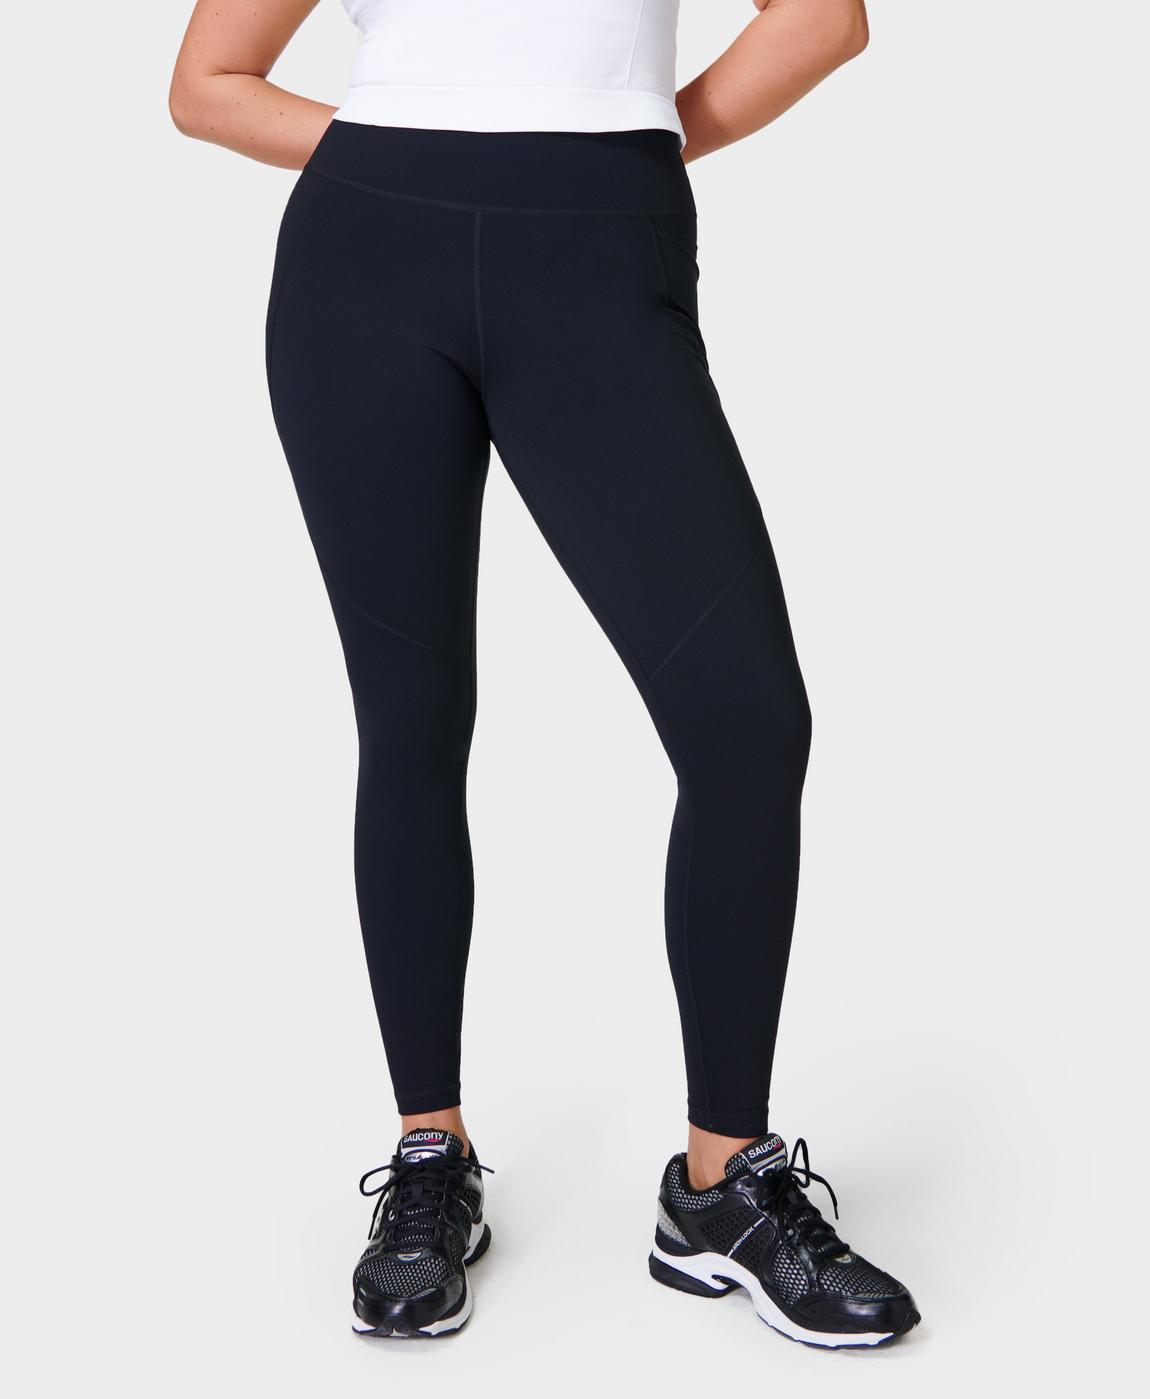 Power Workout Leggings - Black, Women's Leggings